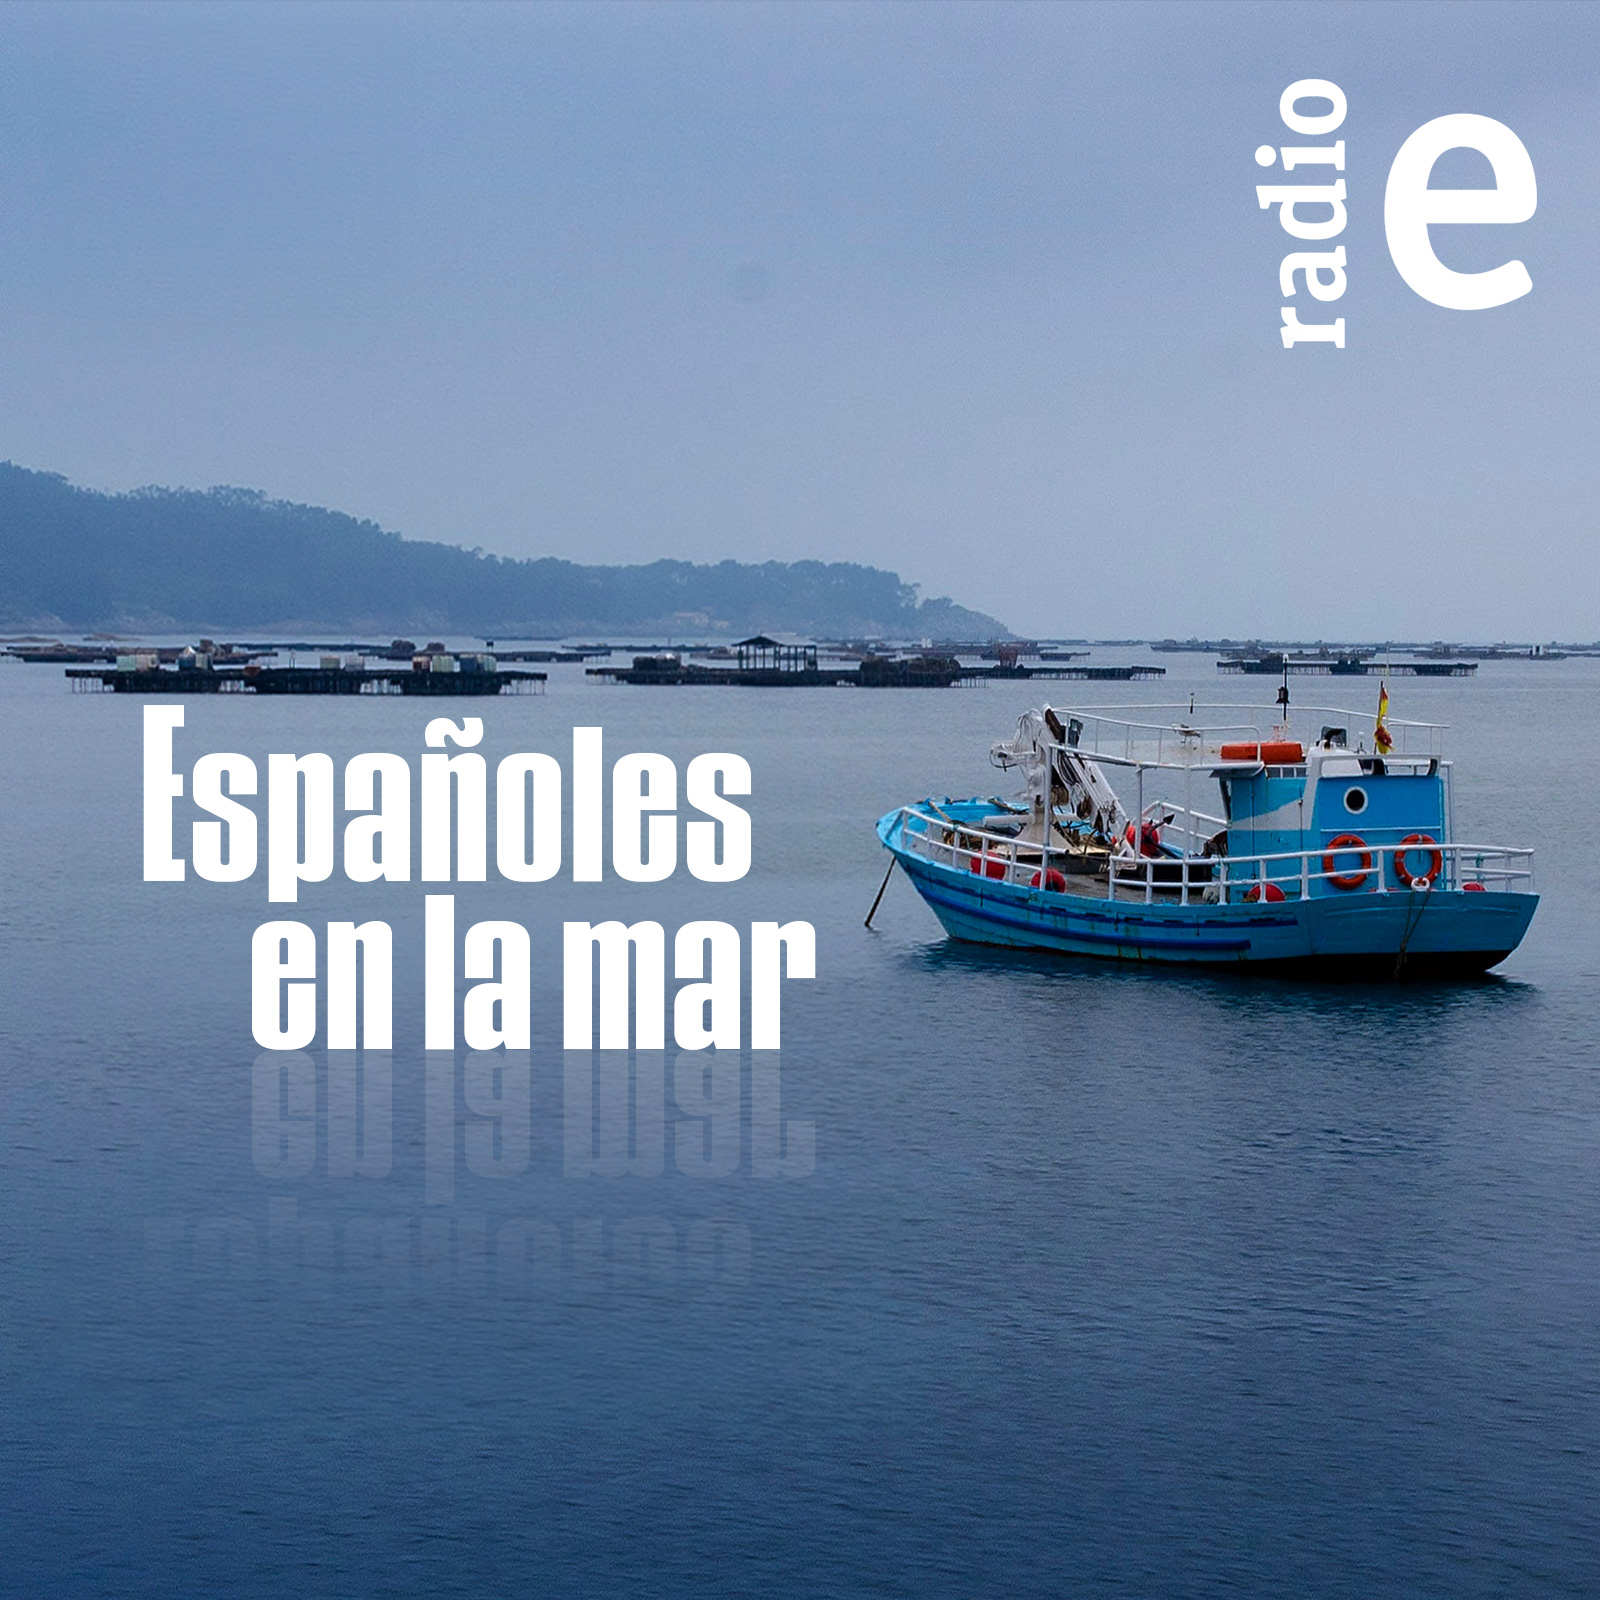 Españoles en la mar - Manifestación por el futuro de la pesca y la acuicultura - 28/02/24